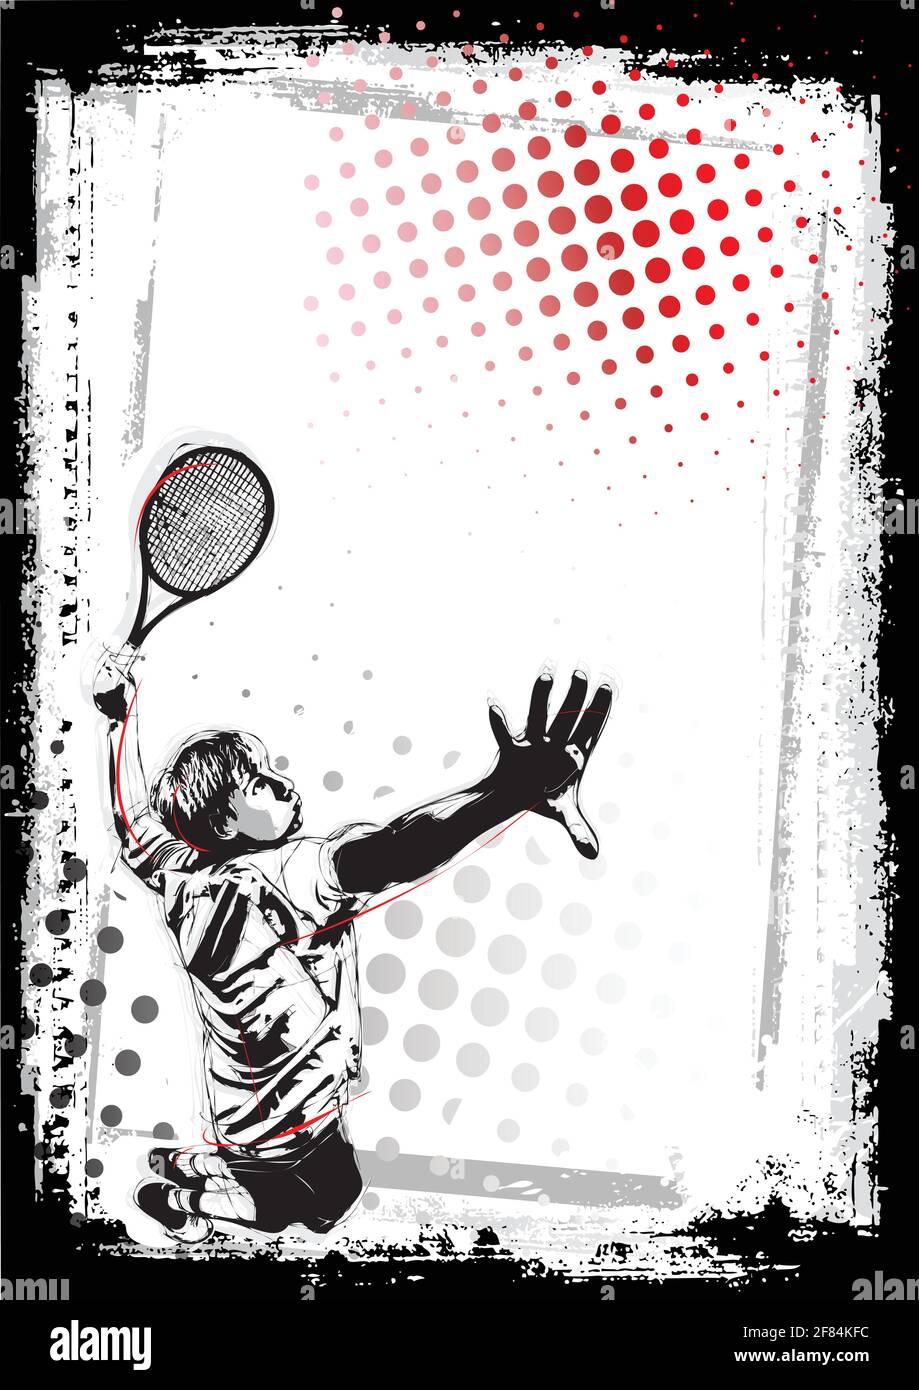 fondo de póster de tenis Ilustración del Vector